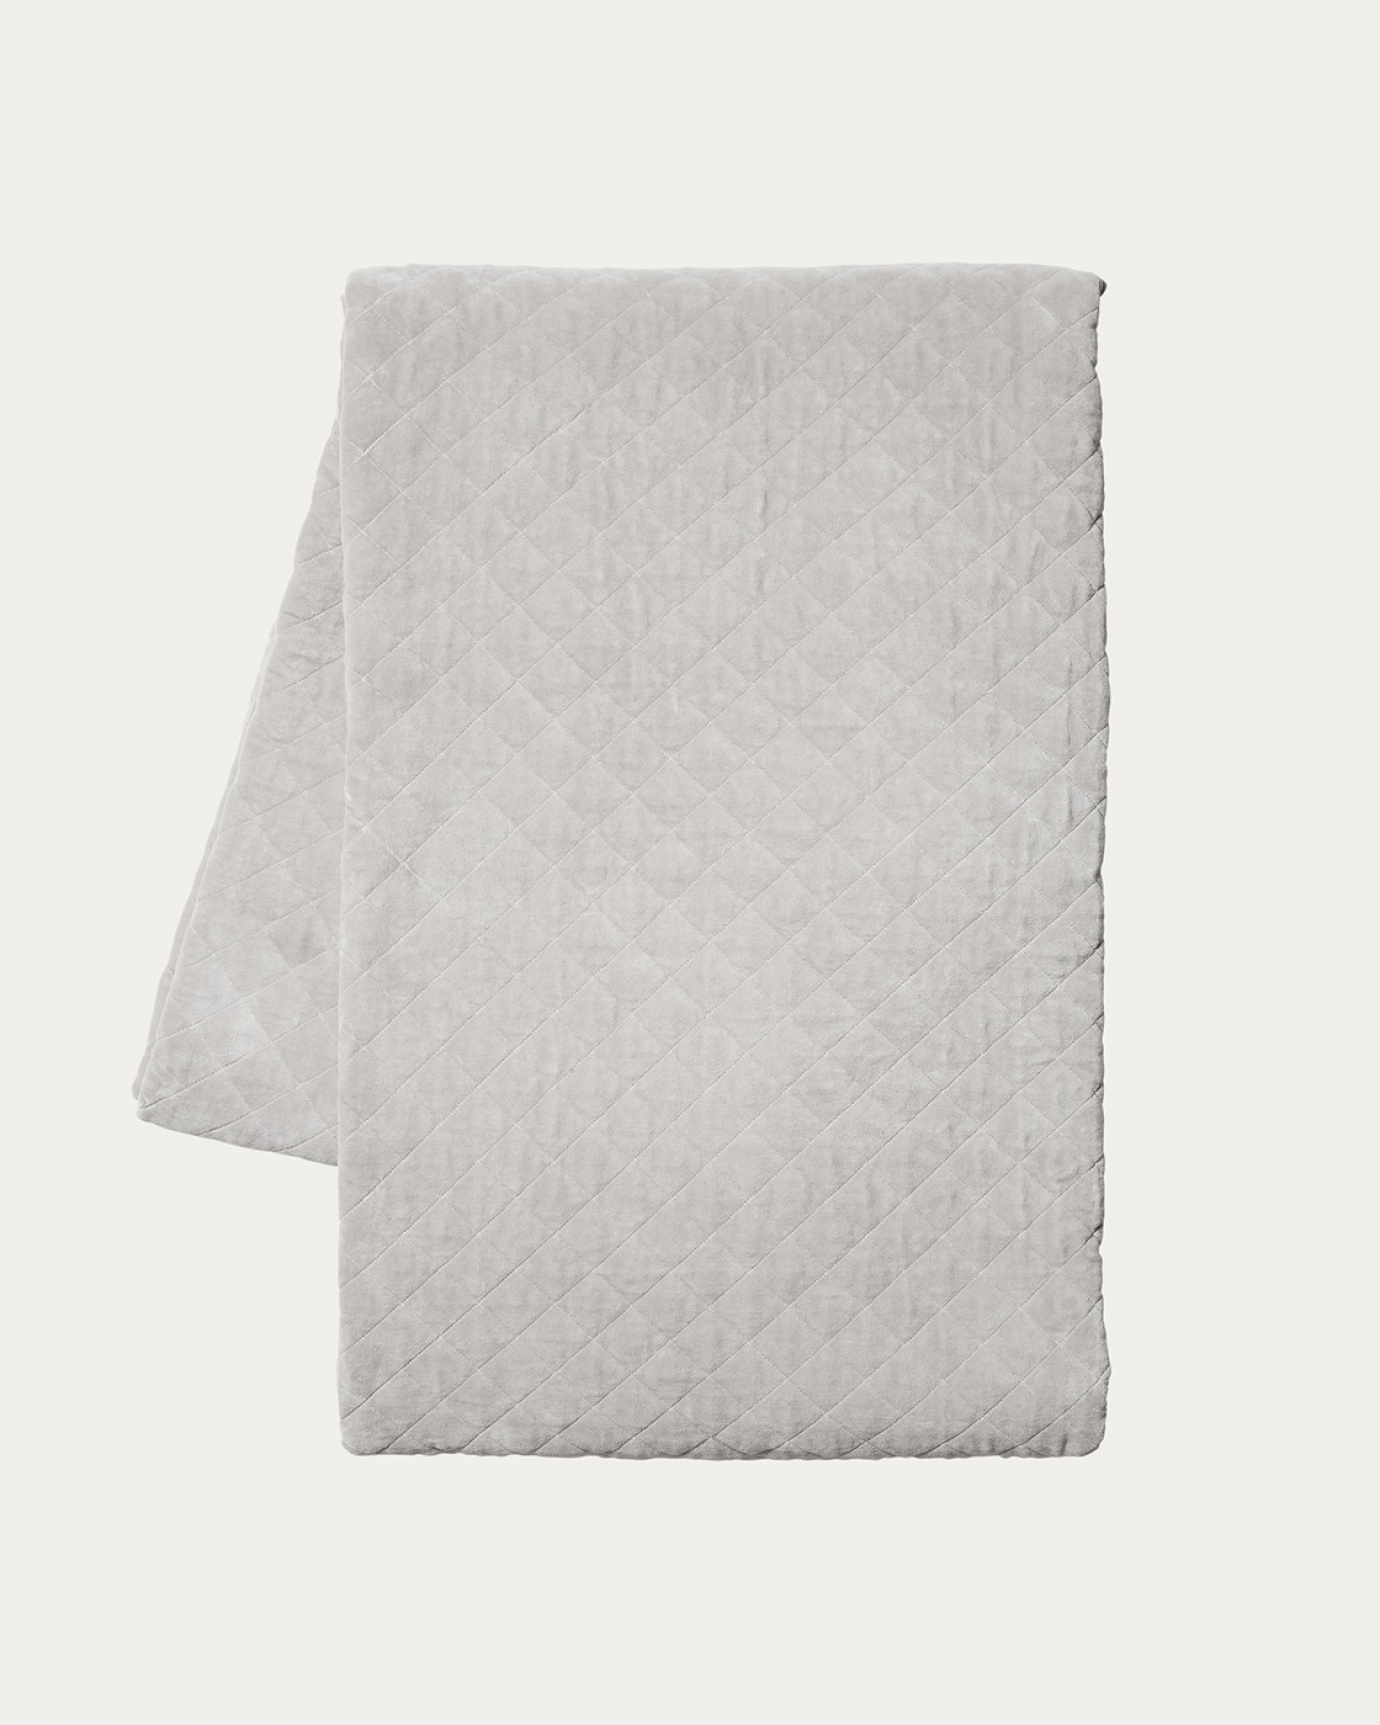 Image du produit couvre-lit PICCOLO gris argenté en velours de coton biologique doux pour lit simple de LINUM DESIGN. Taille 170 x 260 cm.